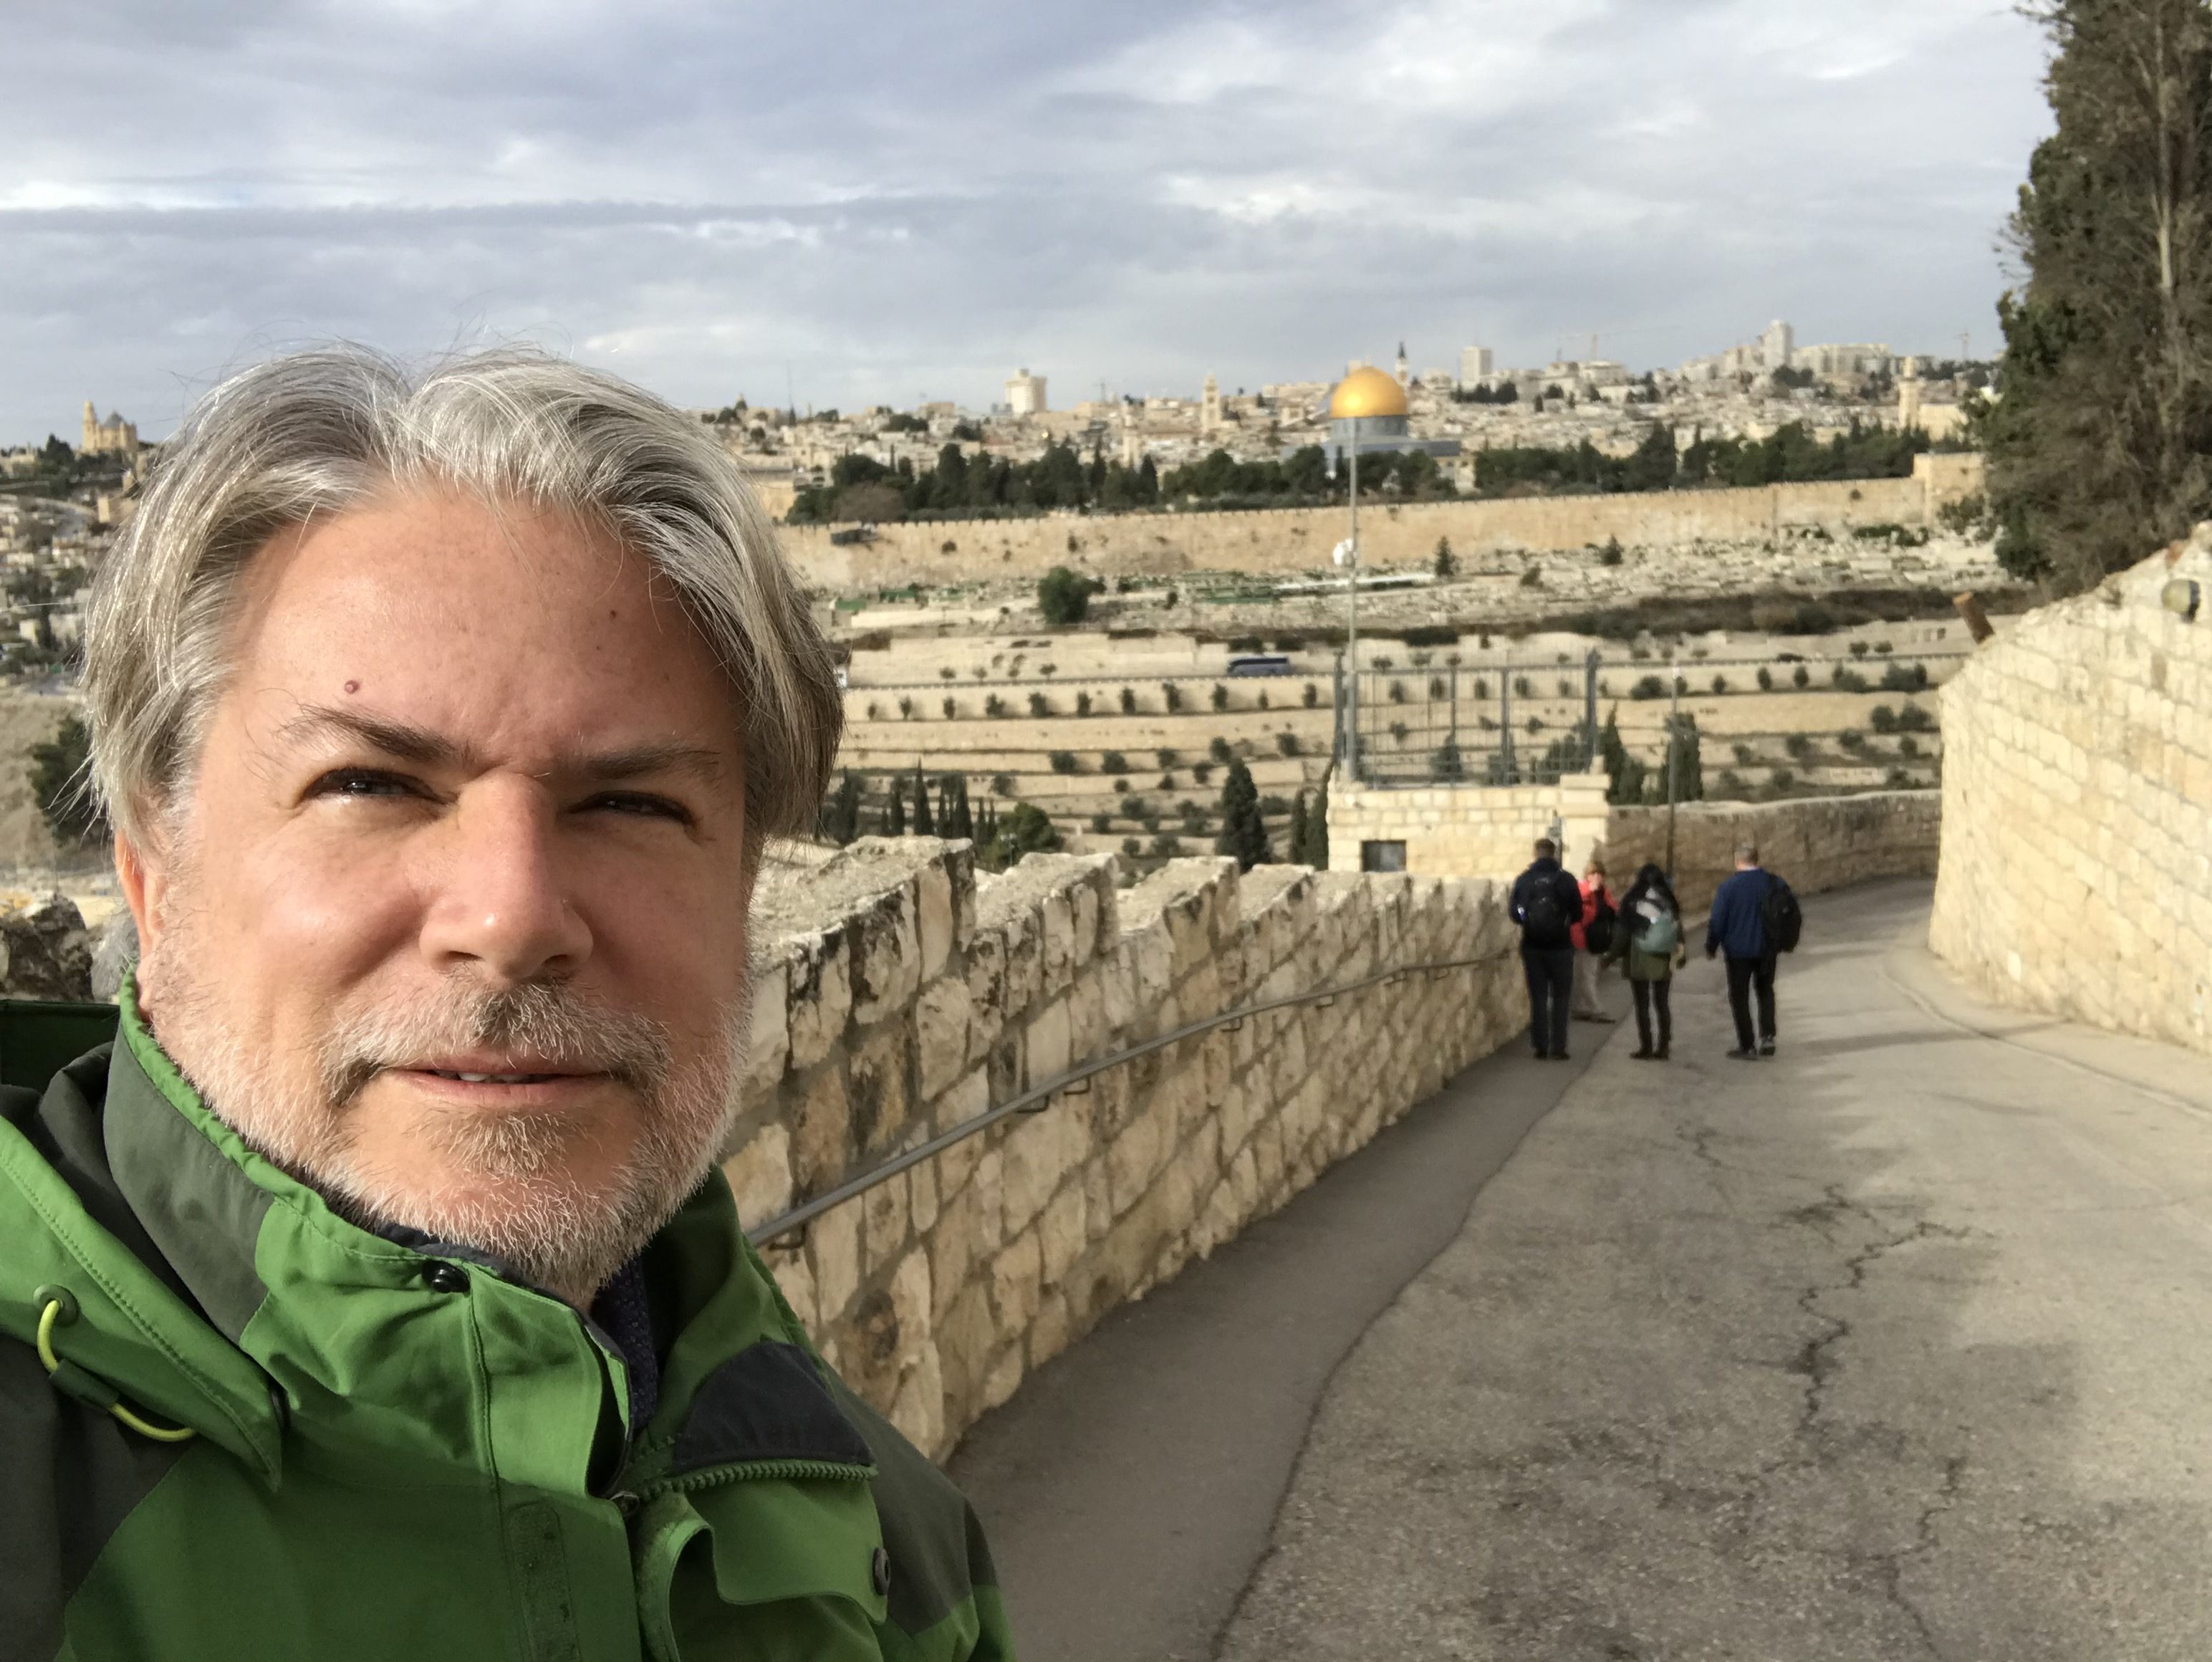 Bonus Holiday Episode: Shabbat Shalom from Israel